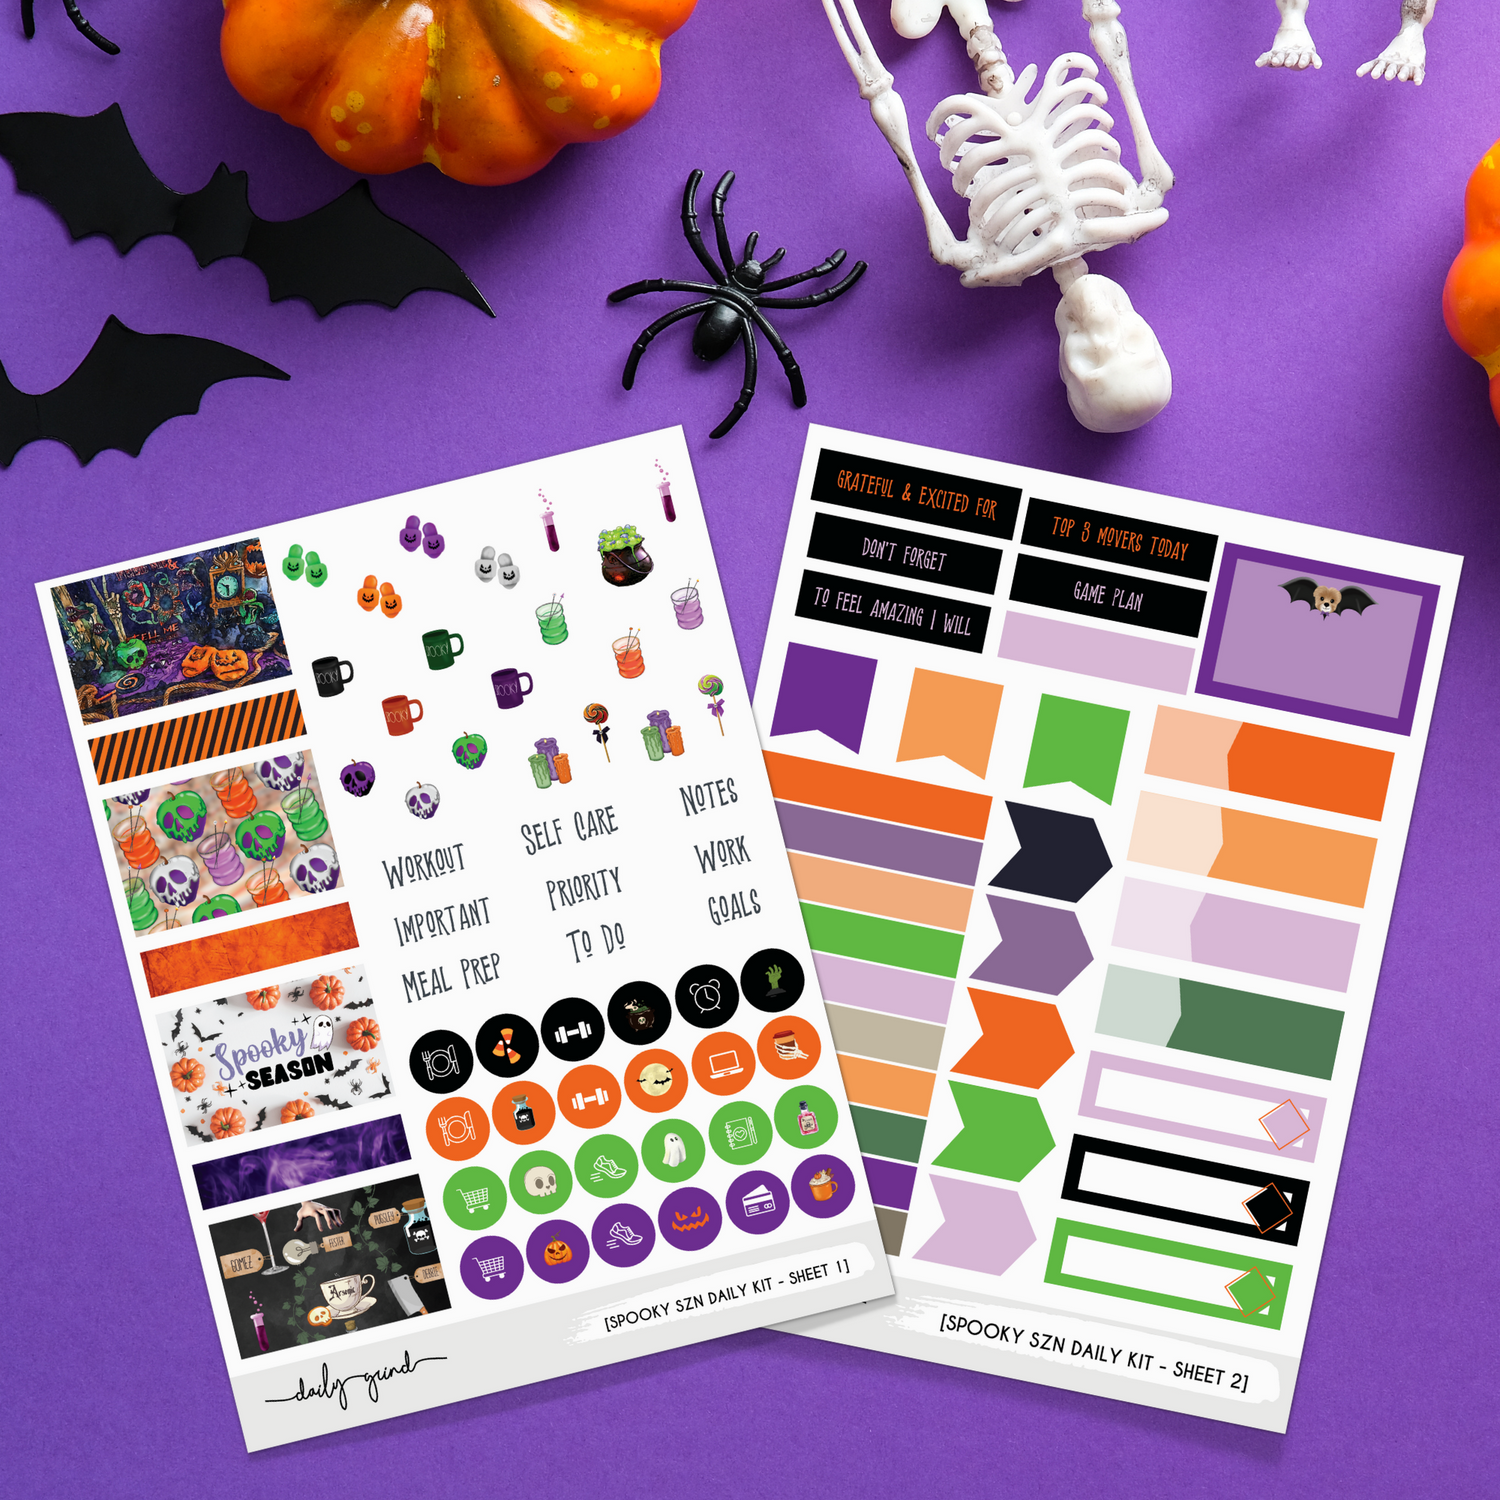 Daily Sticker Kit - Spooky Szn